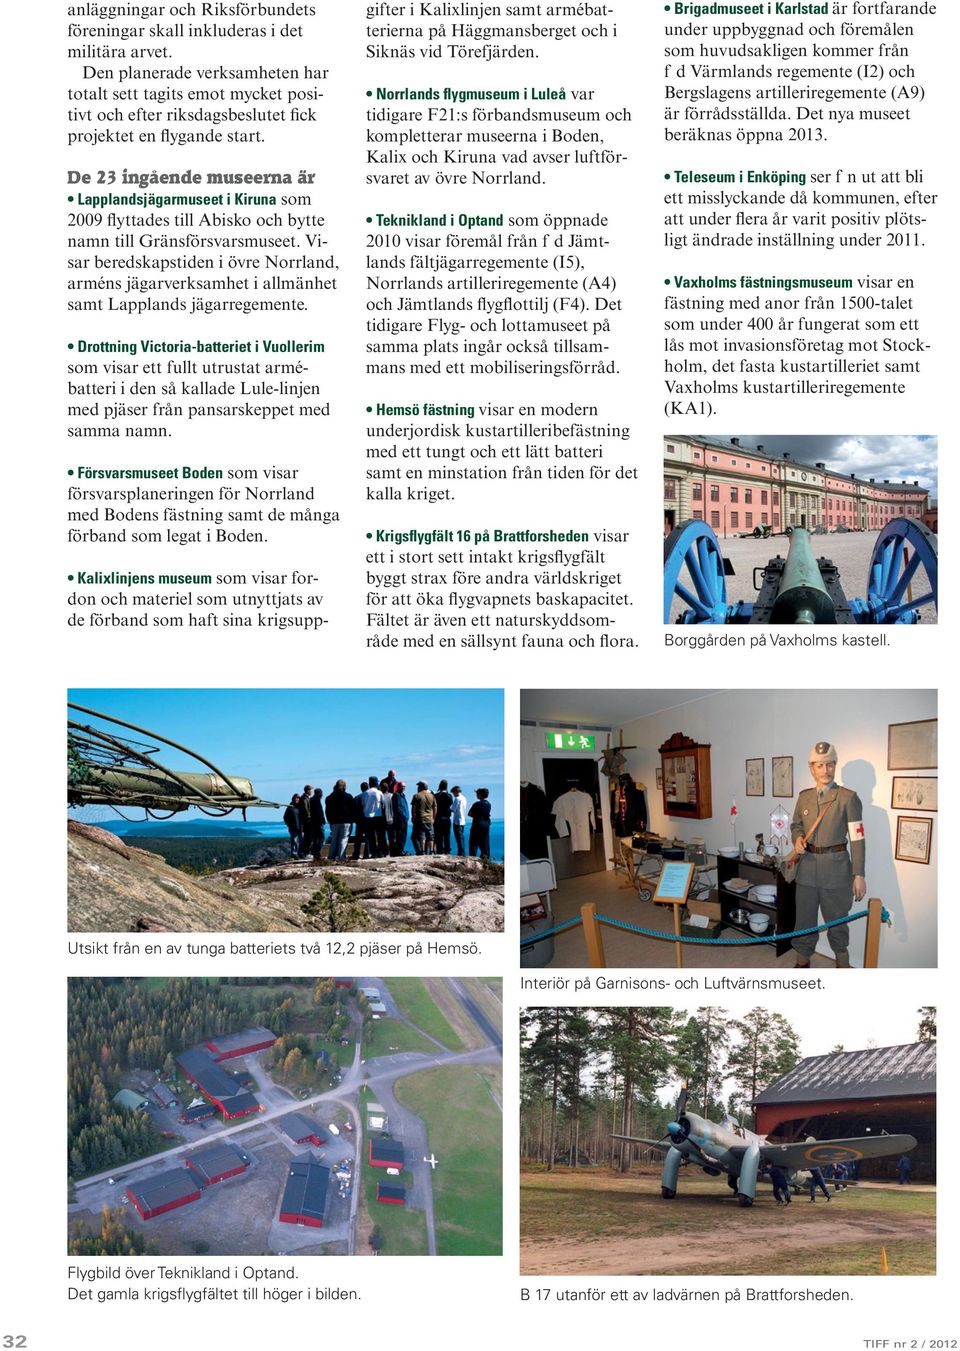 De 23 ingående museerna är Lapplandsjägarmuseet i Kiruna som 2009 flyttades till Abisko och bytte namn till Gränsförsvarsmuseet.